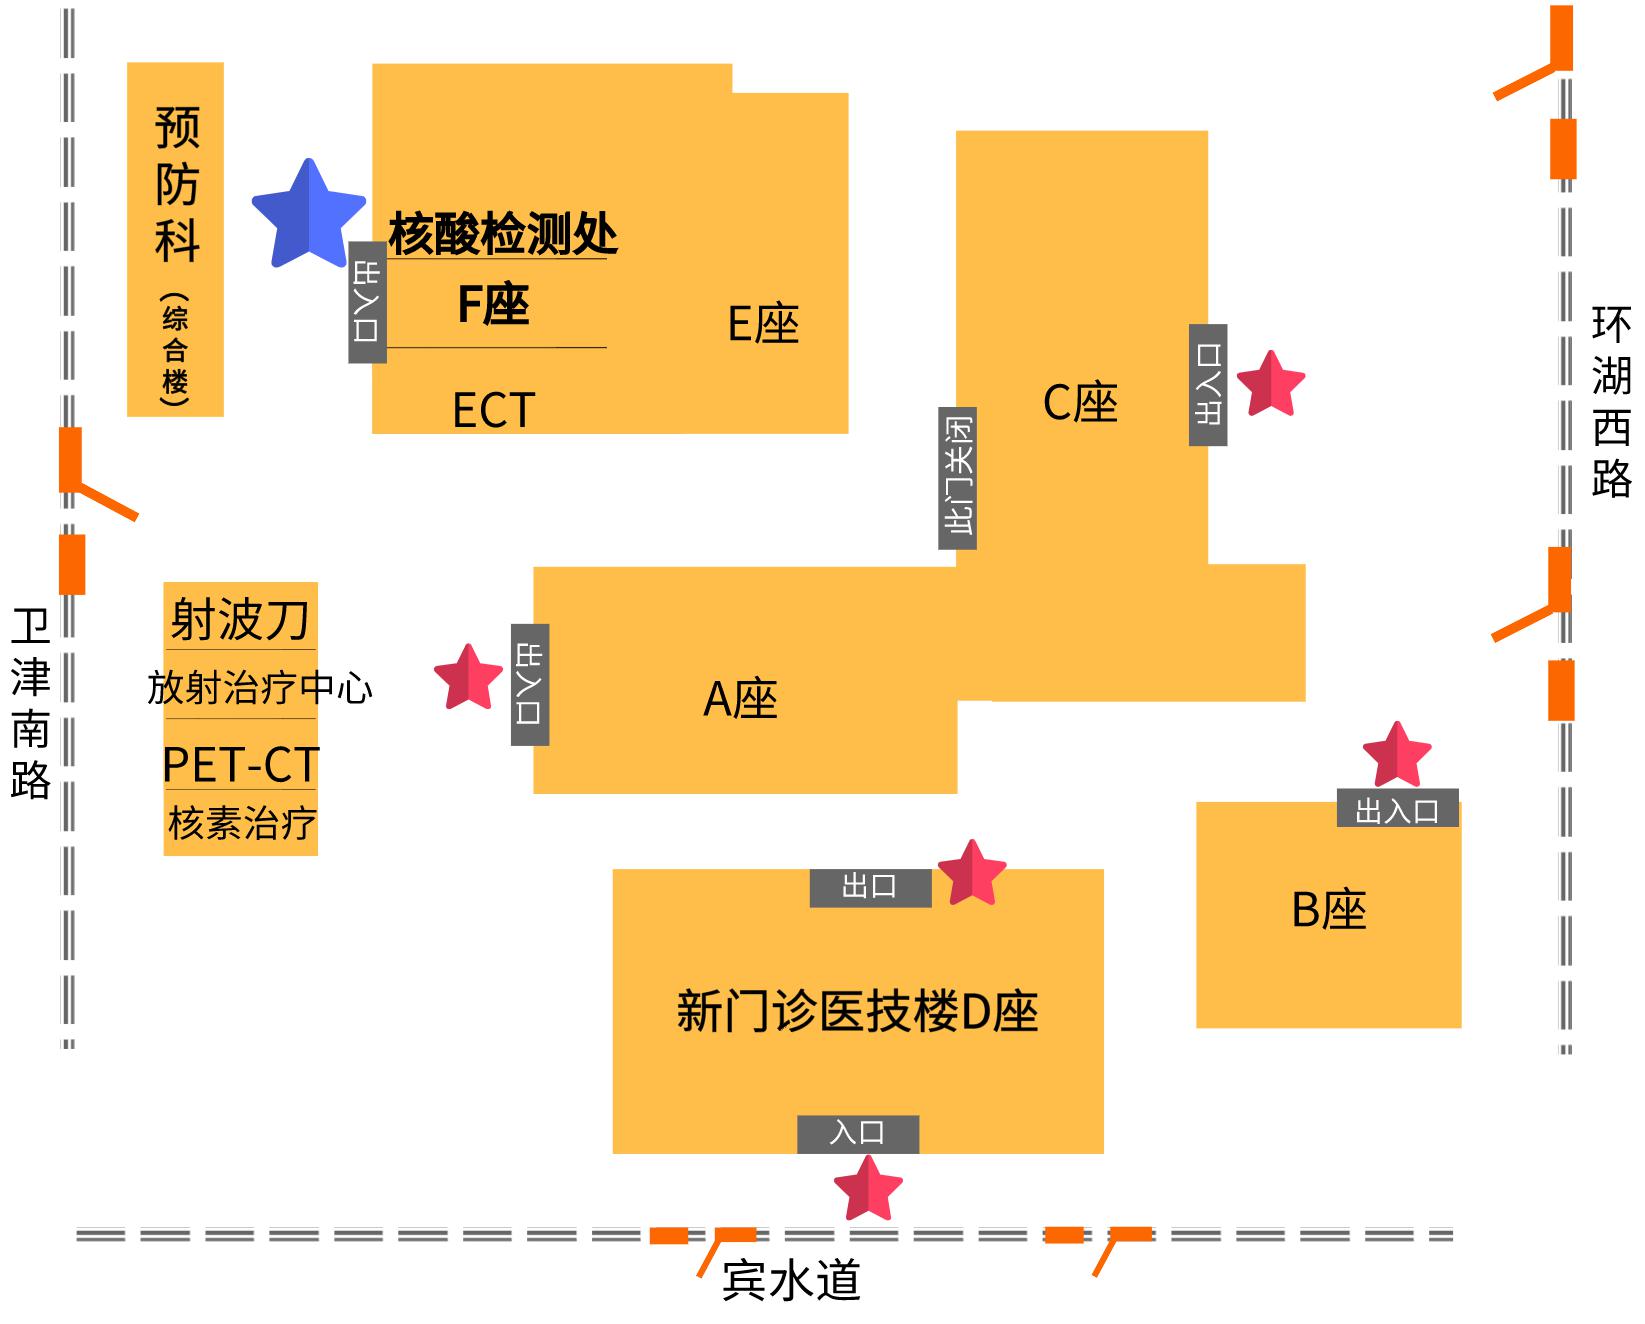 天津肿瘤医院地图图片